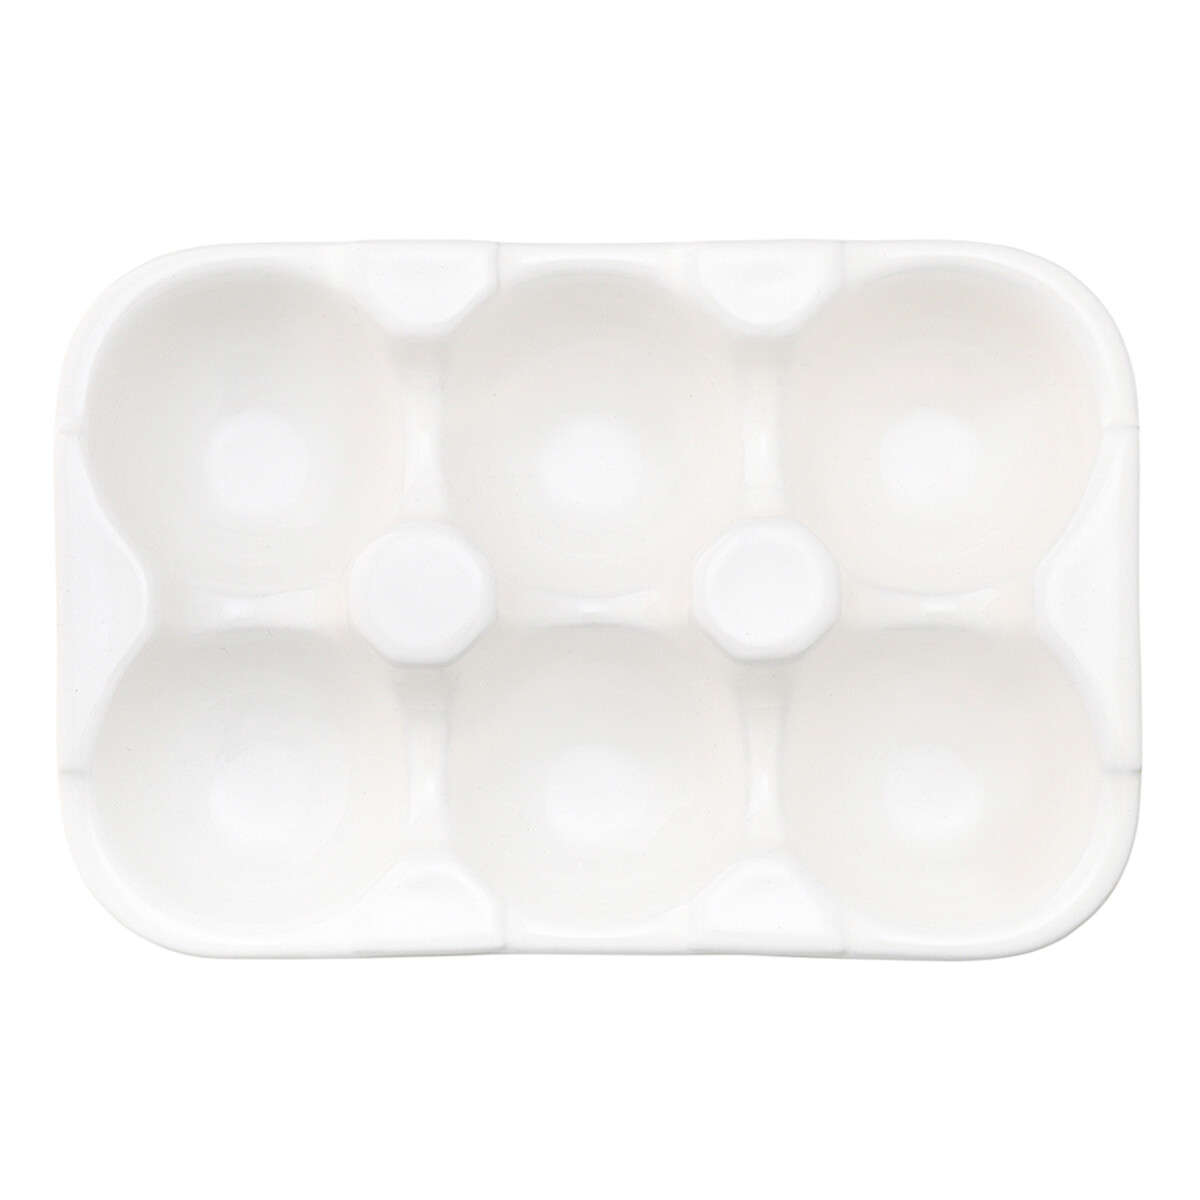 Подставка для яиц Simplicity 186х124 см  единый размер белый LaRedoute - фото 4